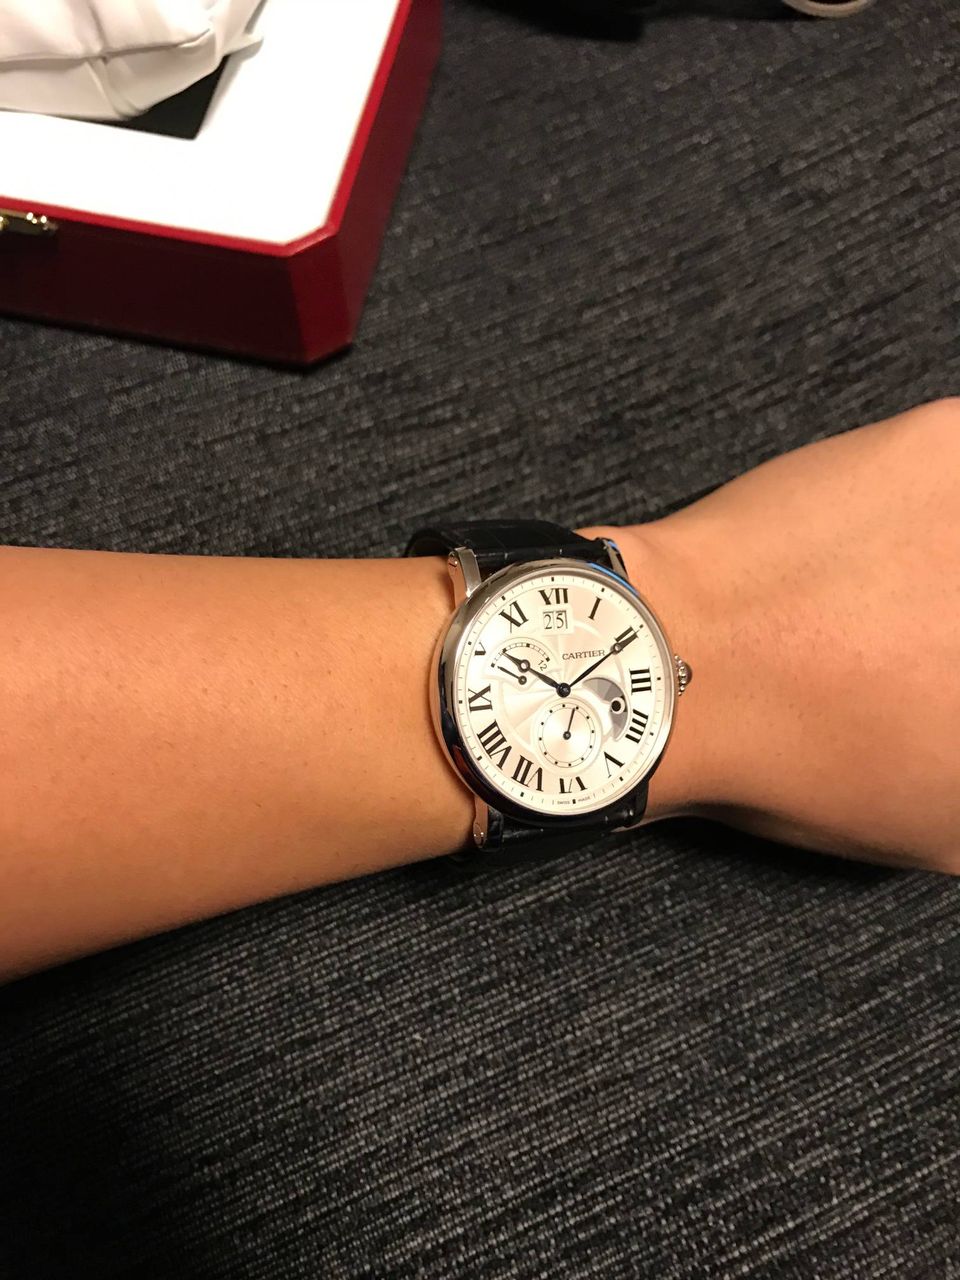 【カルティエ】腕時計買ったったたwwww